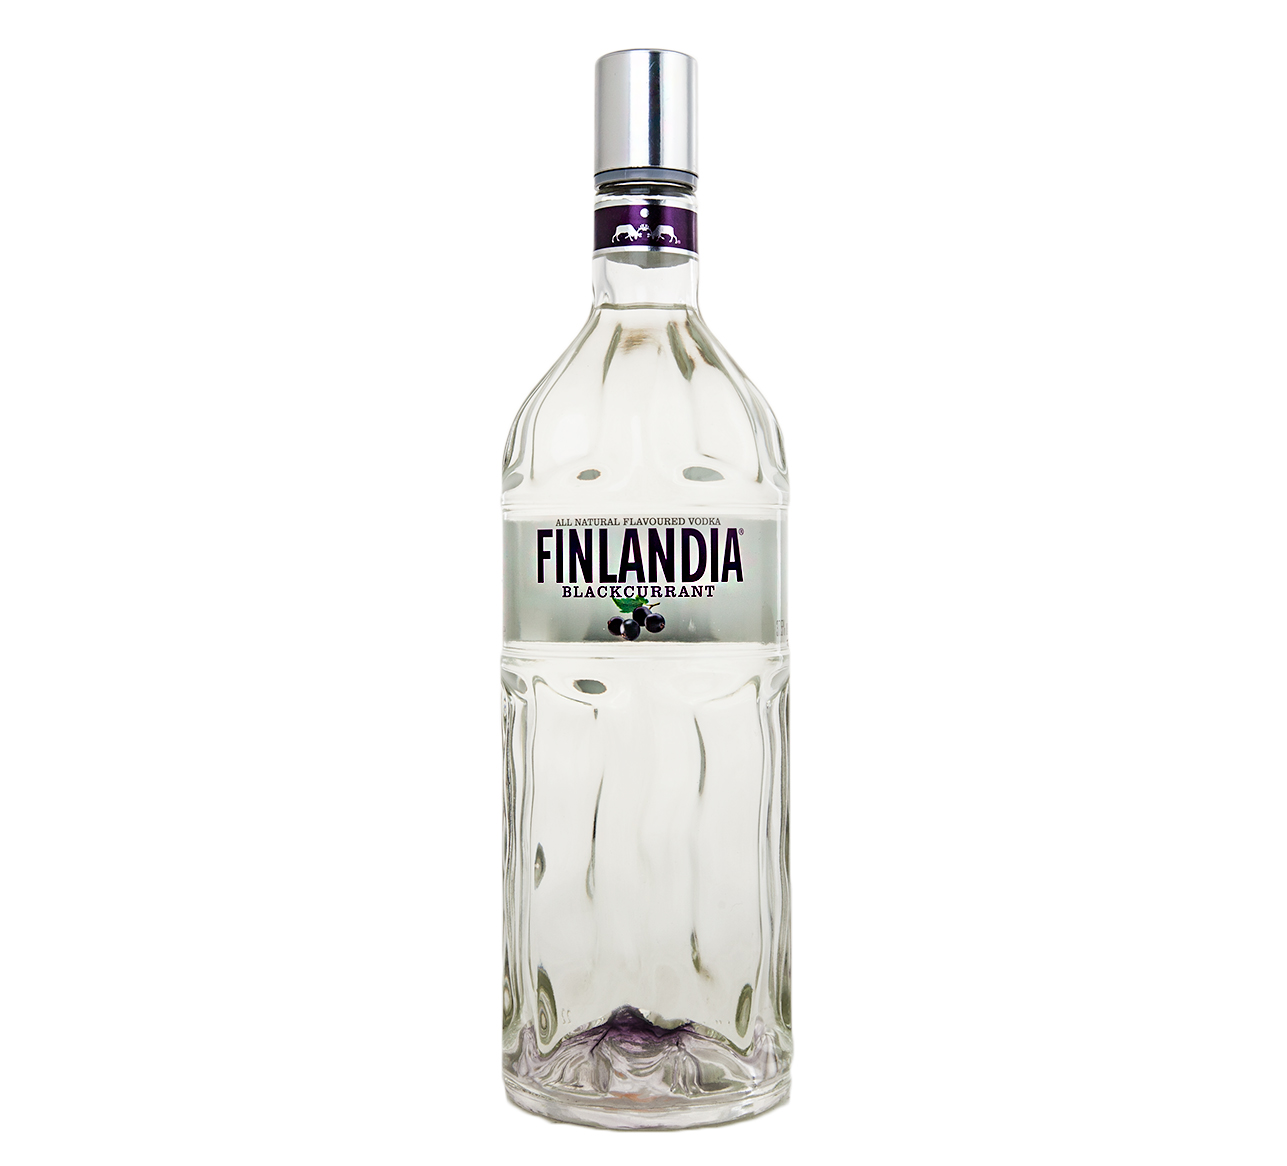 Finlandia Blackcurrant - водка Финляндия Черная Смородина 1 л